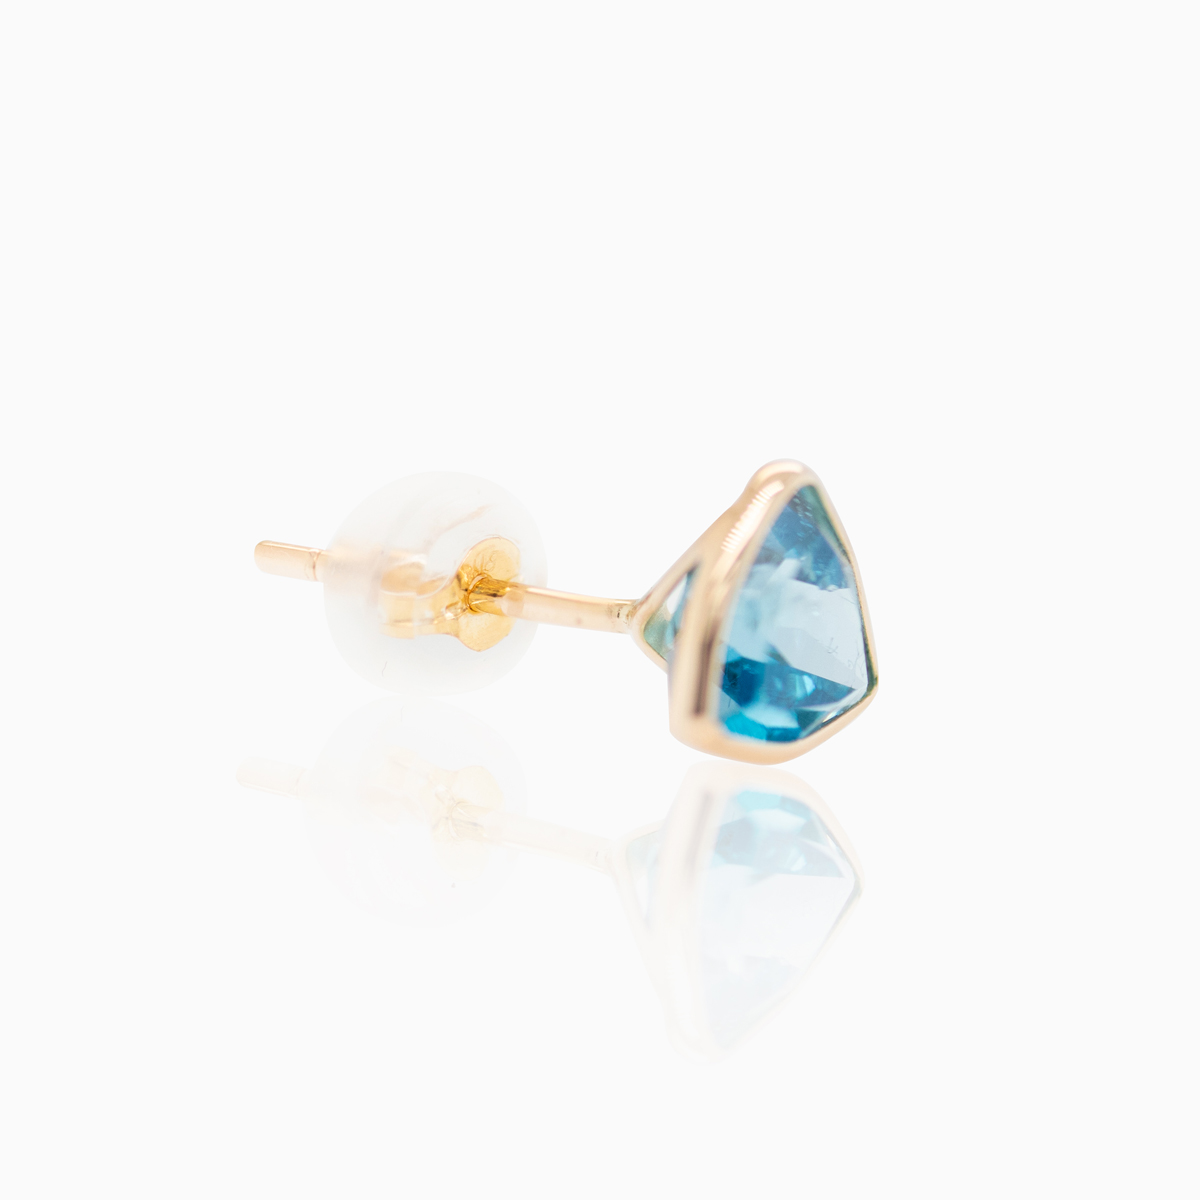 Trilliant-cut Swiss Blue Topaz Stud Earrings, 14k Yellow Gold